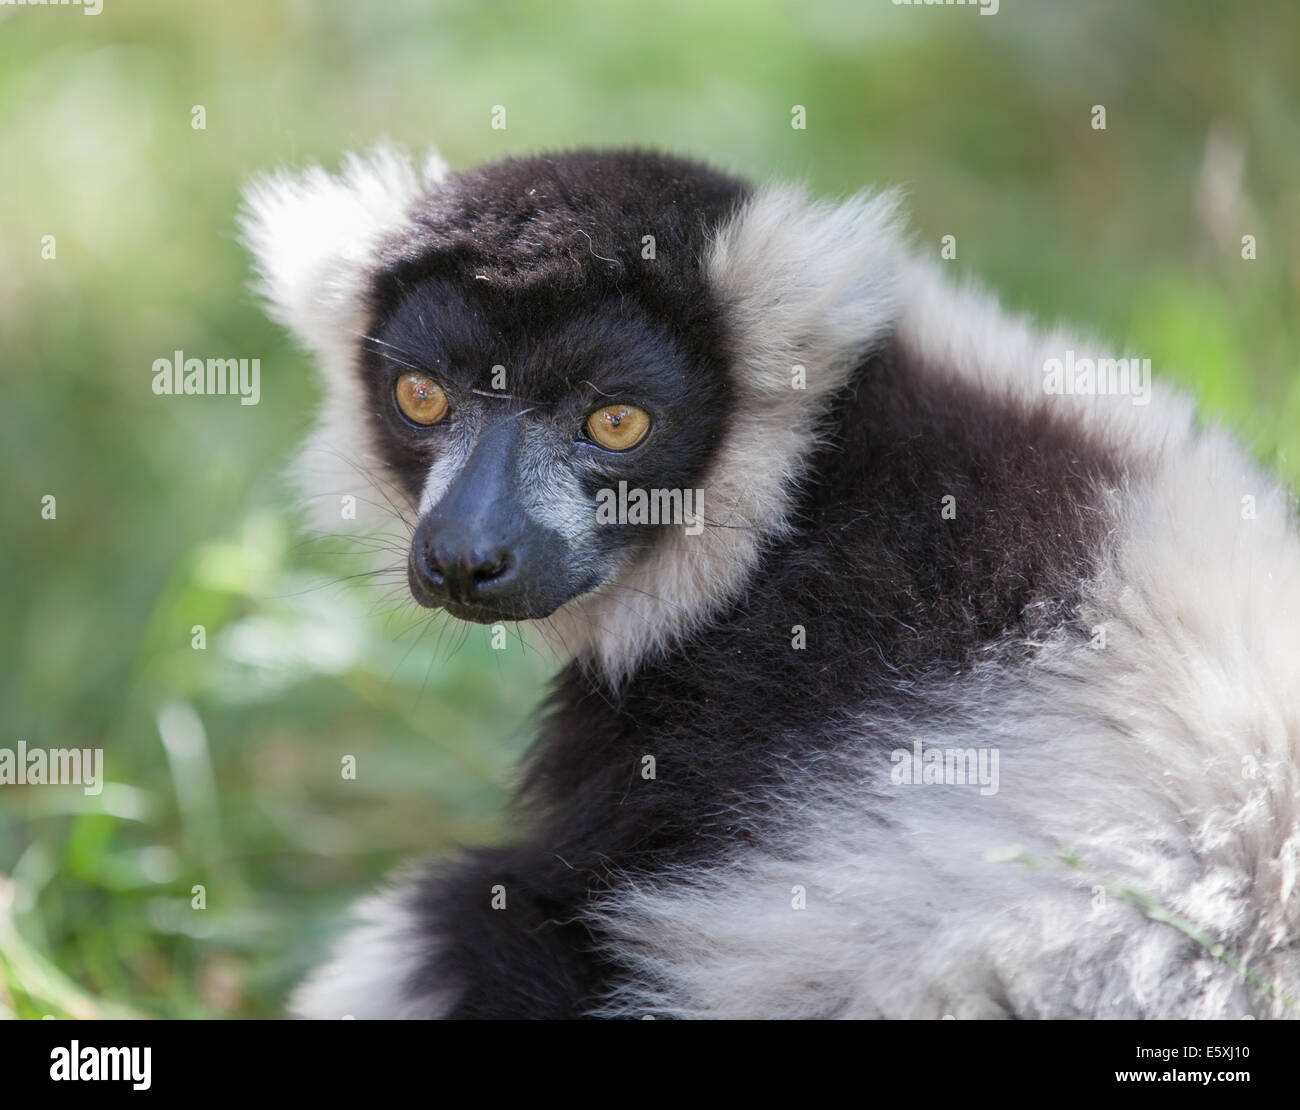 Black and white ruffed lemur Stock Photo